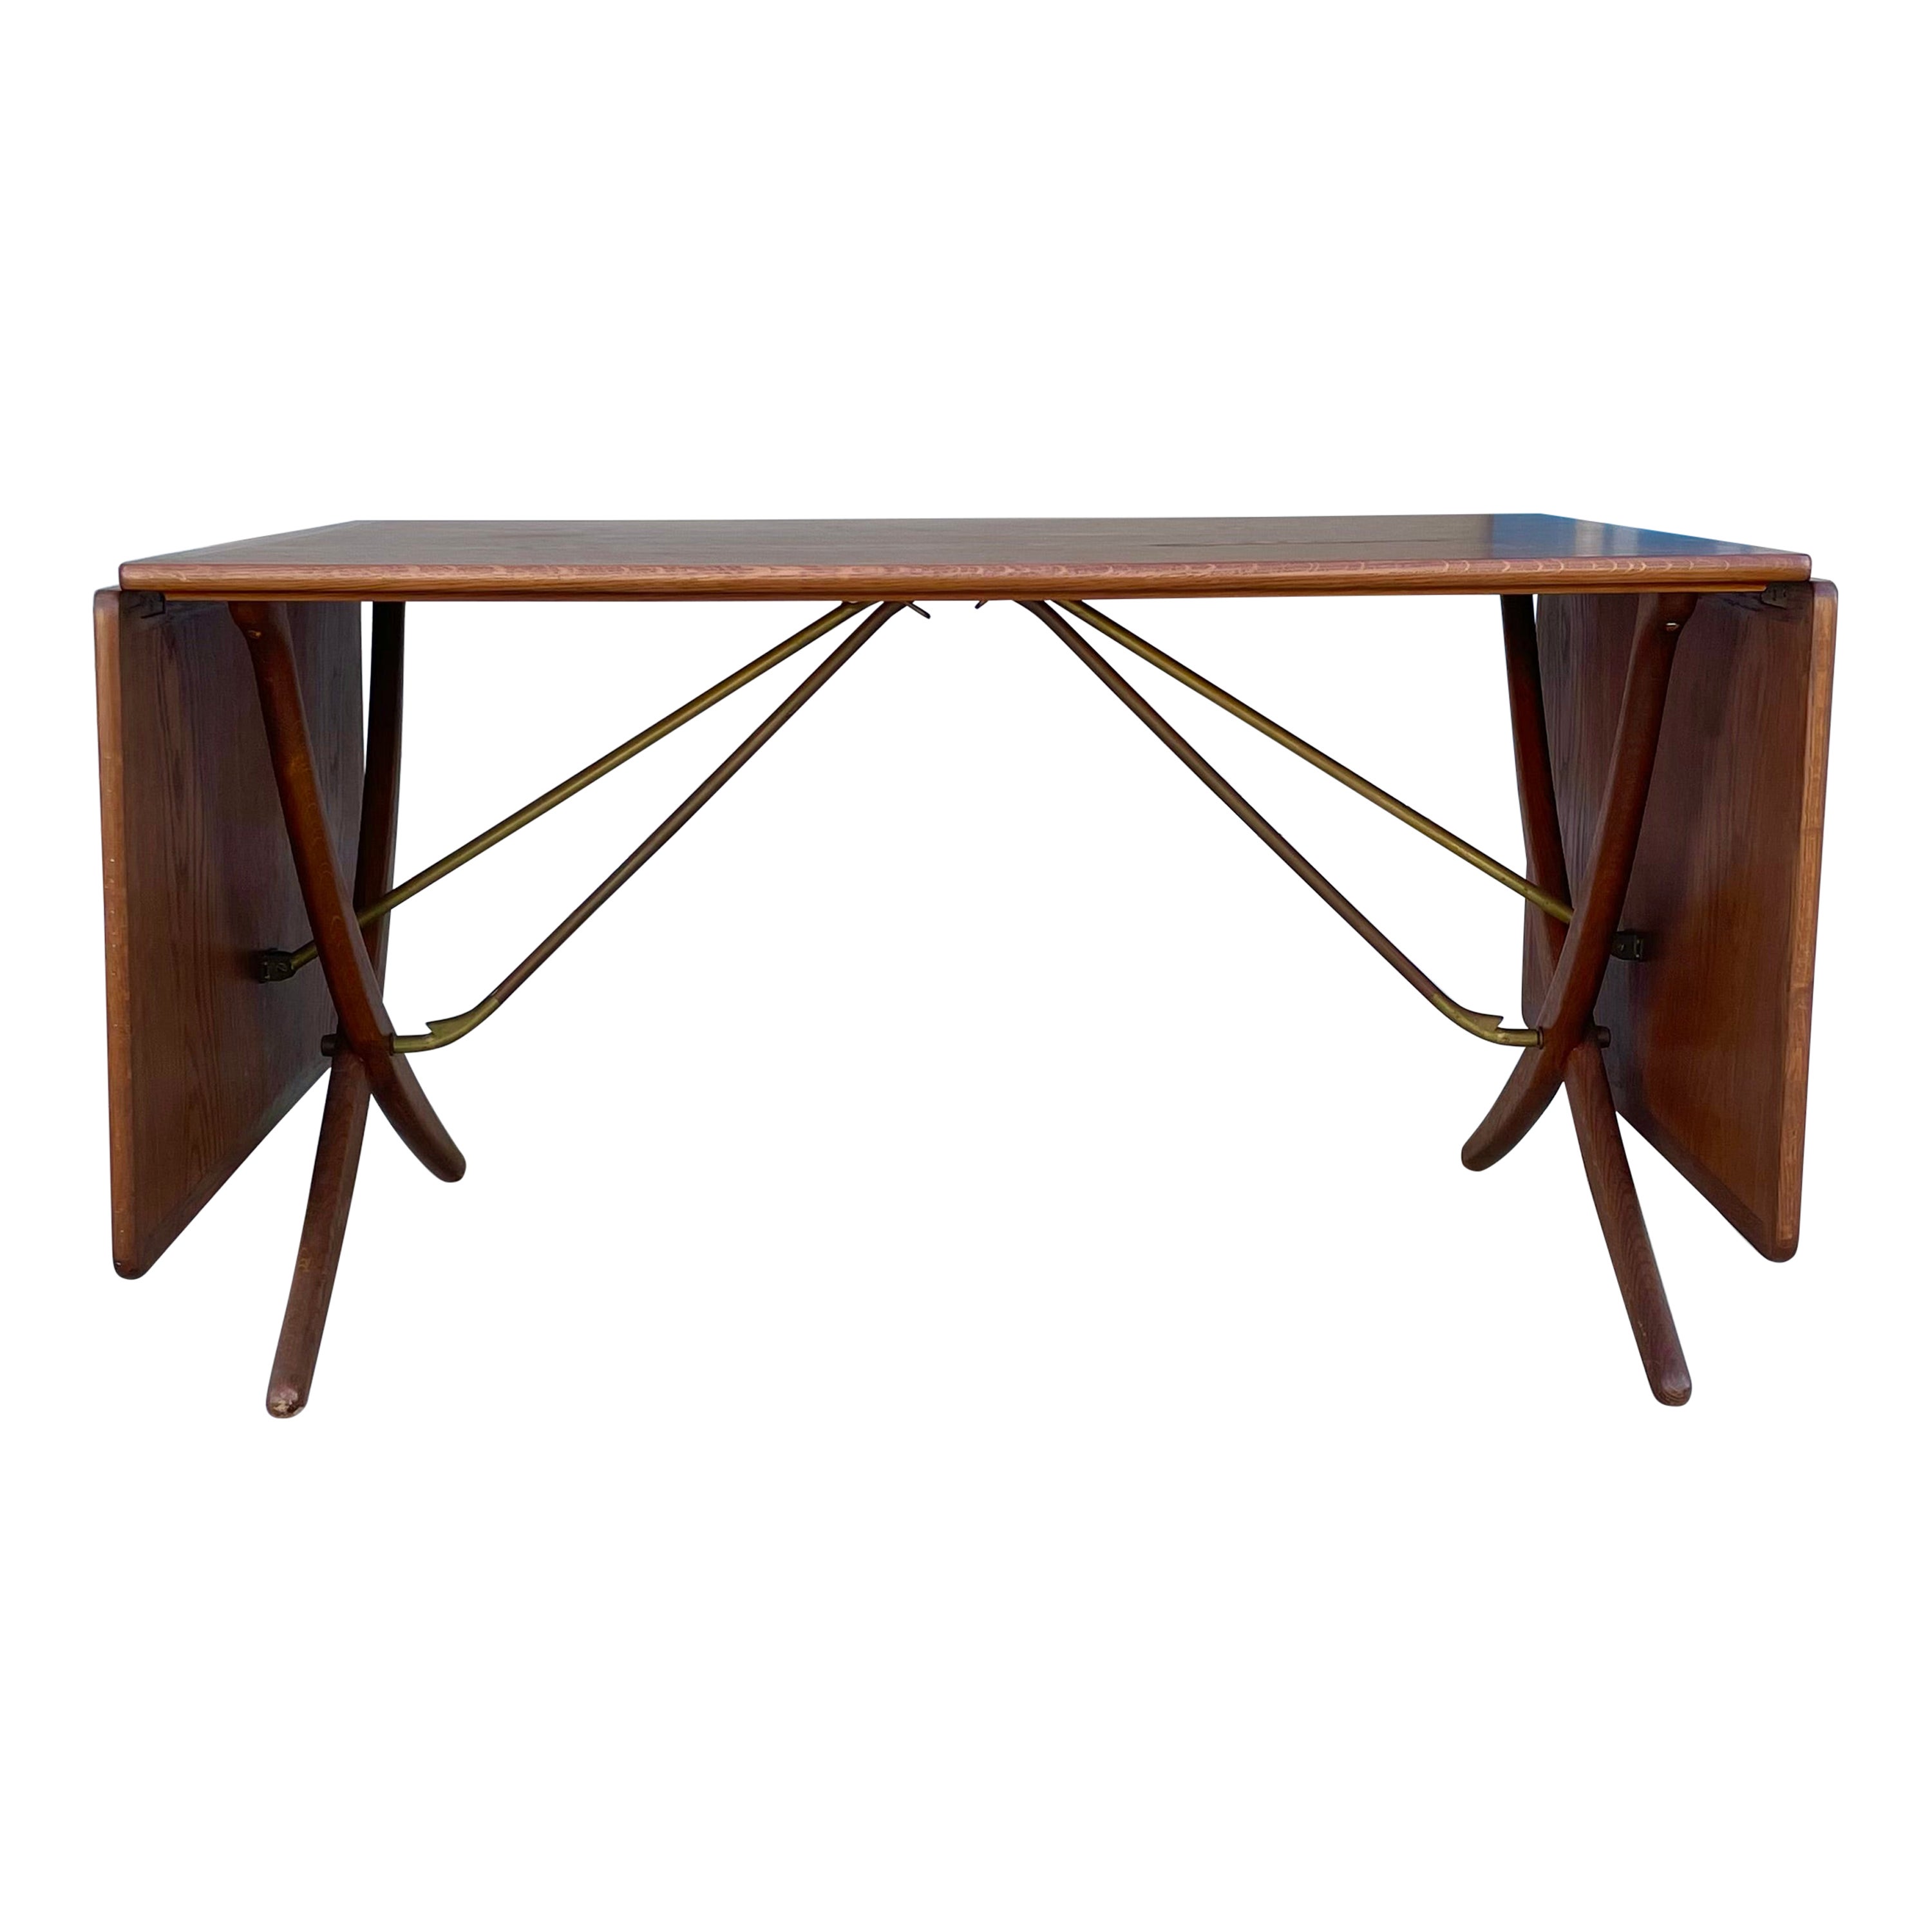 Danish Modern AT-304 Teak and Oak Dining Table by Hans J. Wegner For Sale